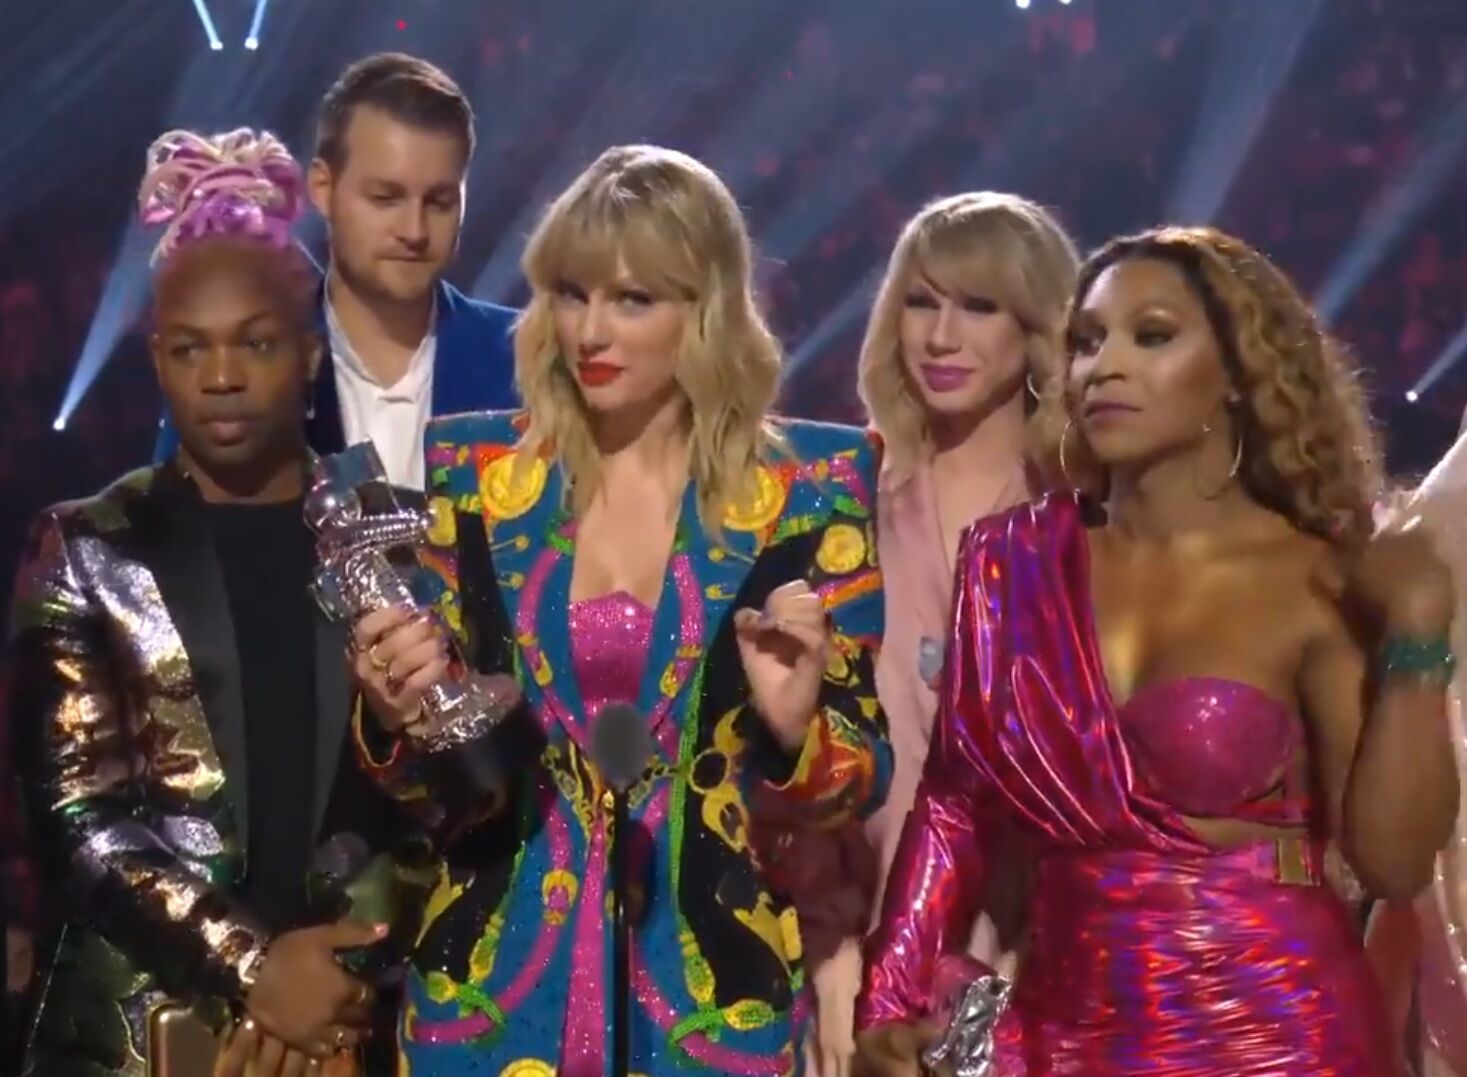 Taylor Swift and company at the VMAs